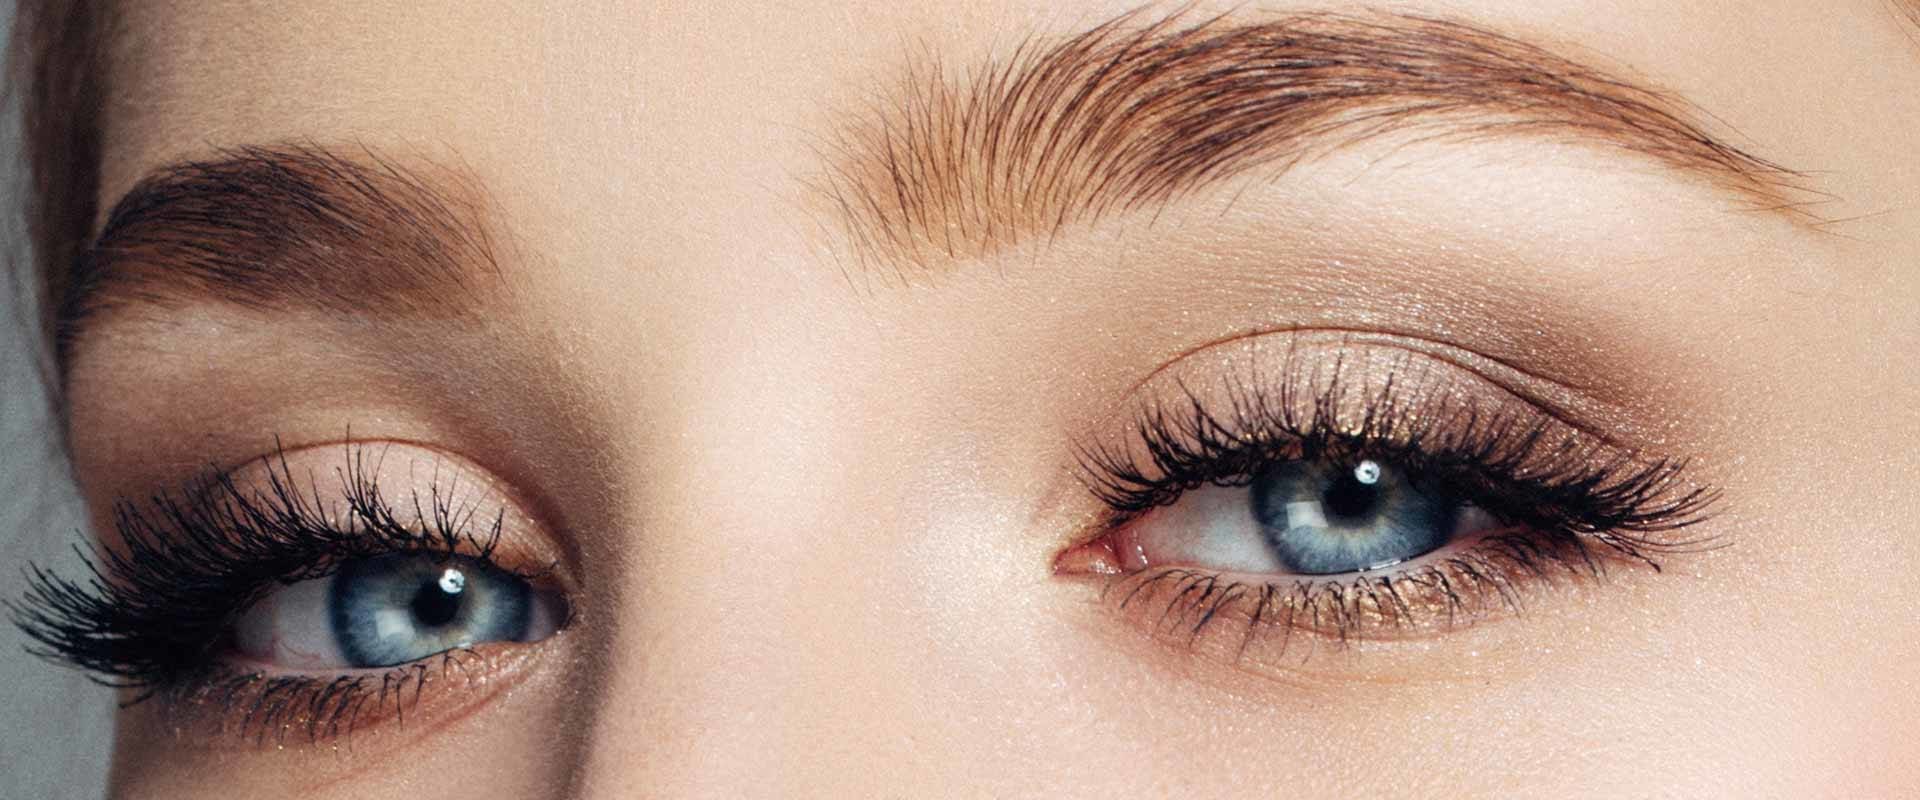 How long do wispy eyelashes last?